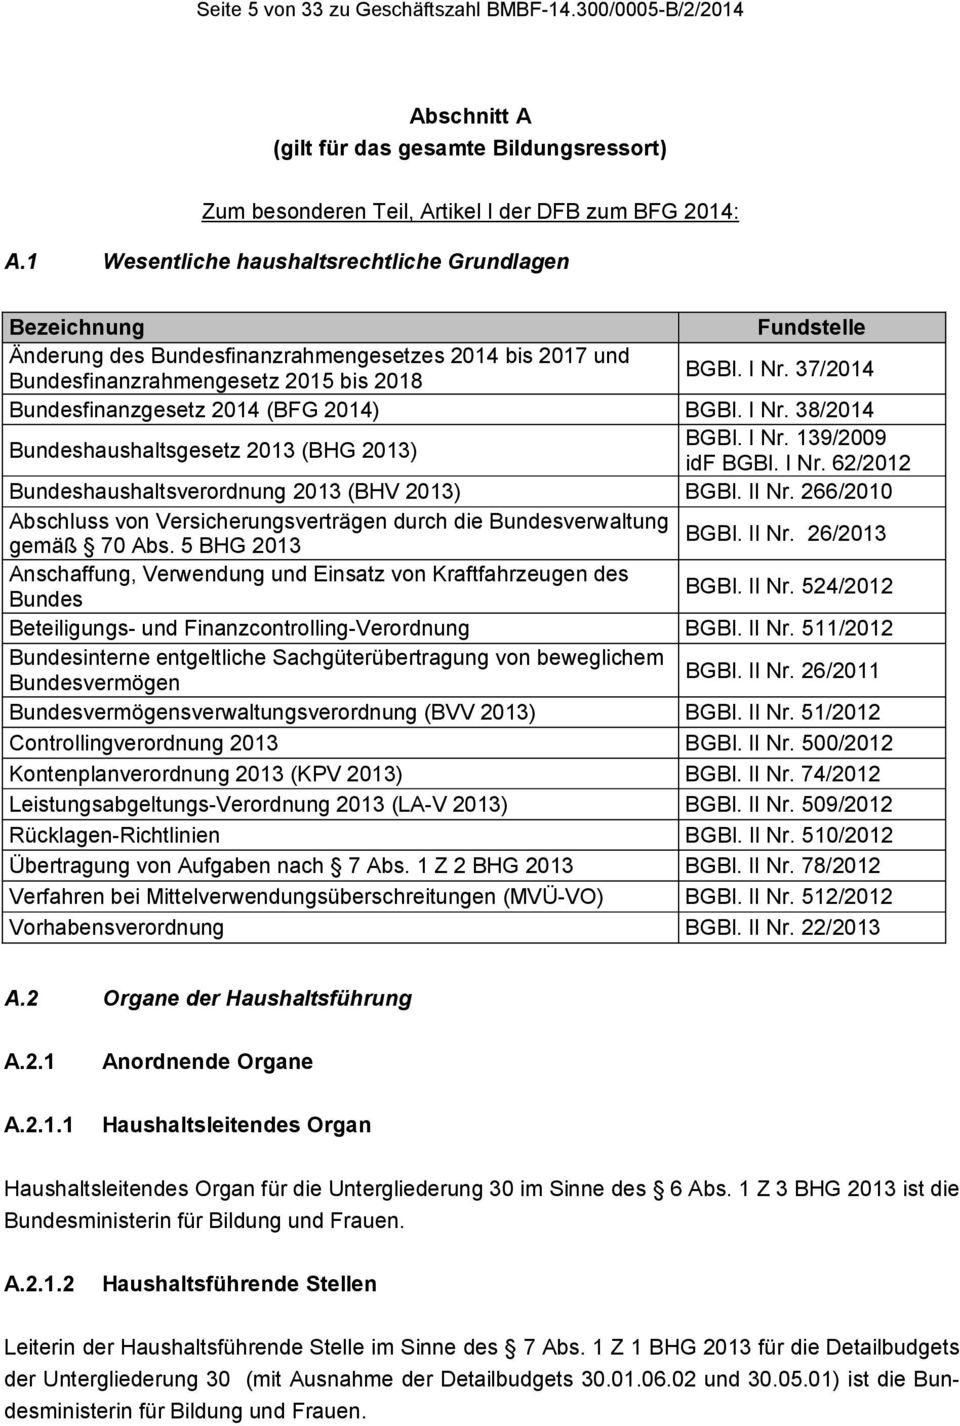 37/2014 Bundesfinanzgesetz 2014 (BFG 2014) BGBl. I Nr. 38/2014 Bundeshaushaltsgesetz 2013 (BHG 2013) BGBl. I Nr. 139/2009 idf BGBl. I Nr. 62/2012 Bundeshaushaltsverordnung 2013 (BHV 2013) BGBl. II Nr.